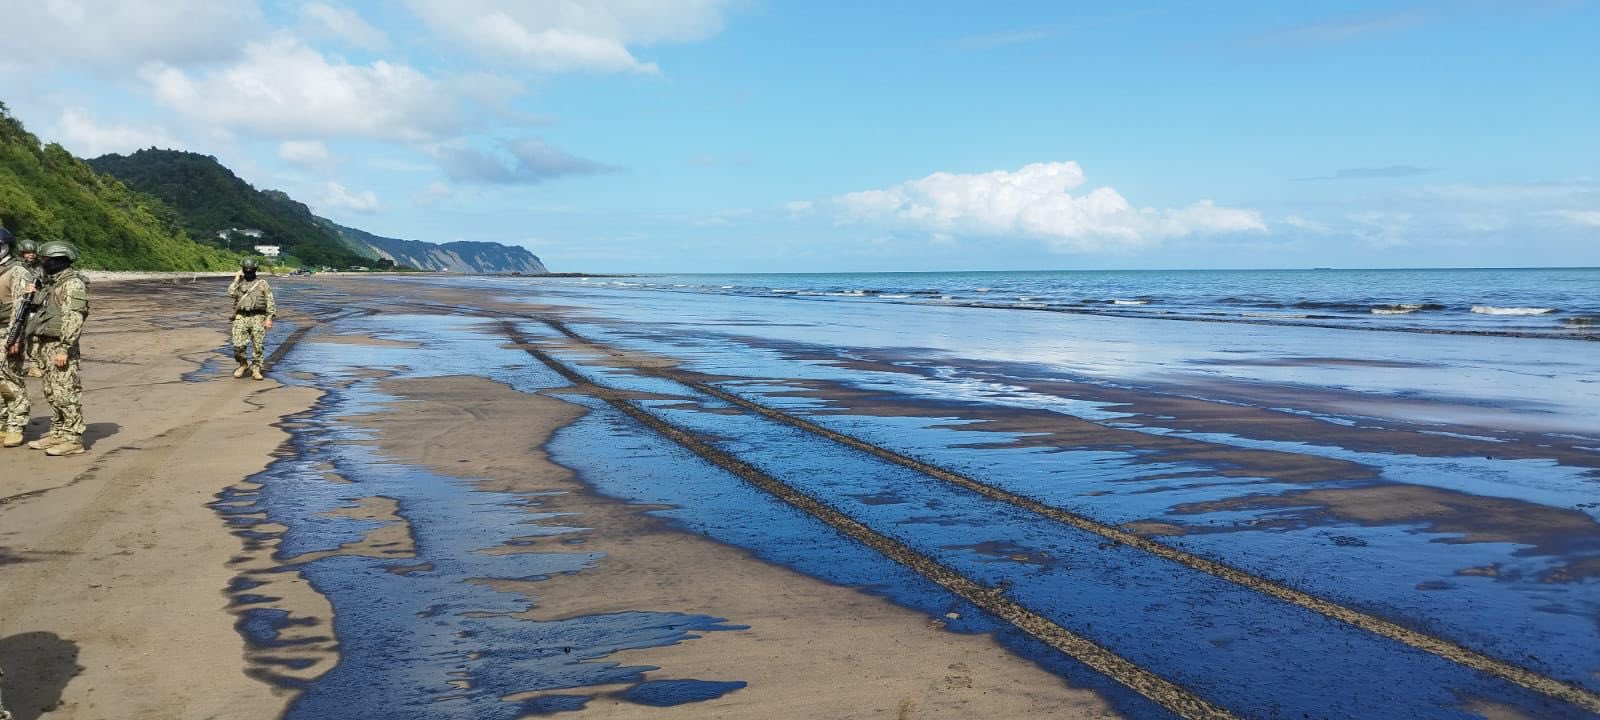 Un derrame de crudo en el mar desde un buque petrolero afecta a una playa en el norte de Ecuador